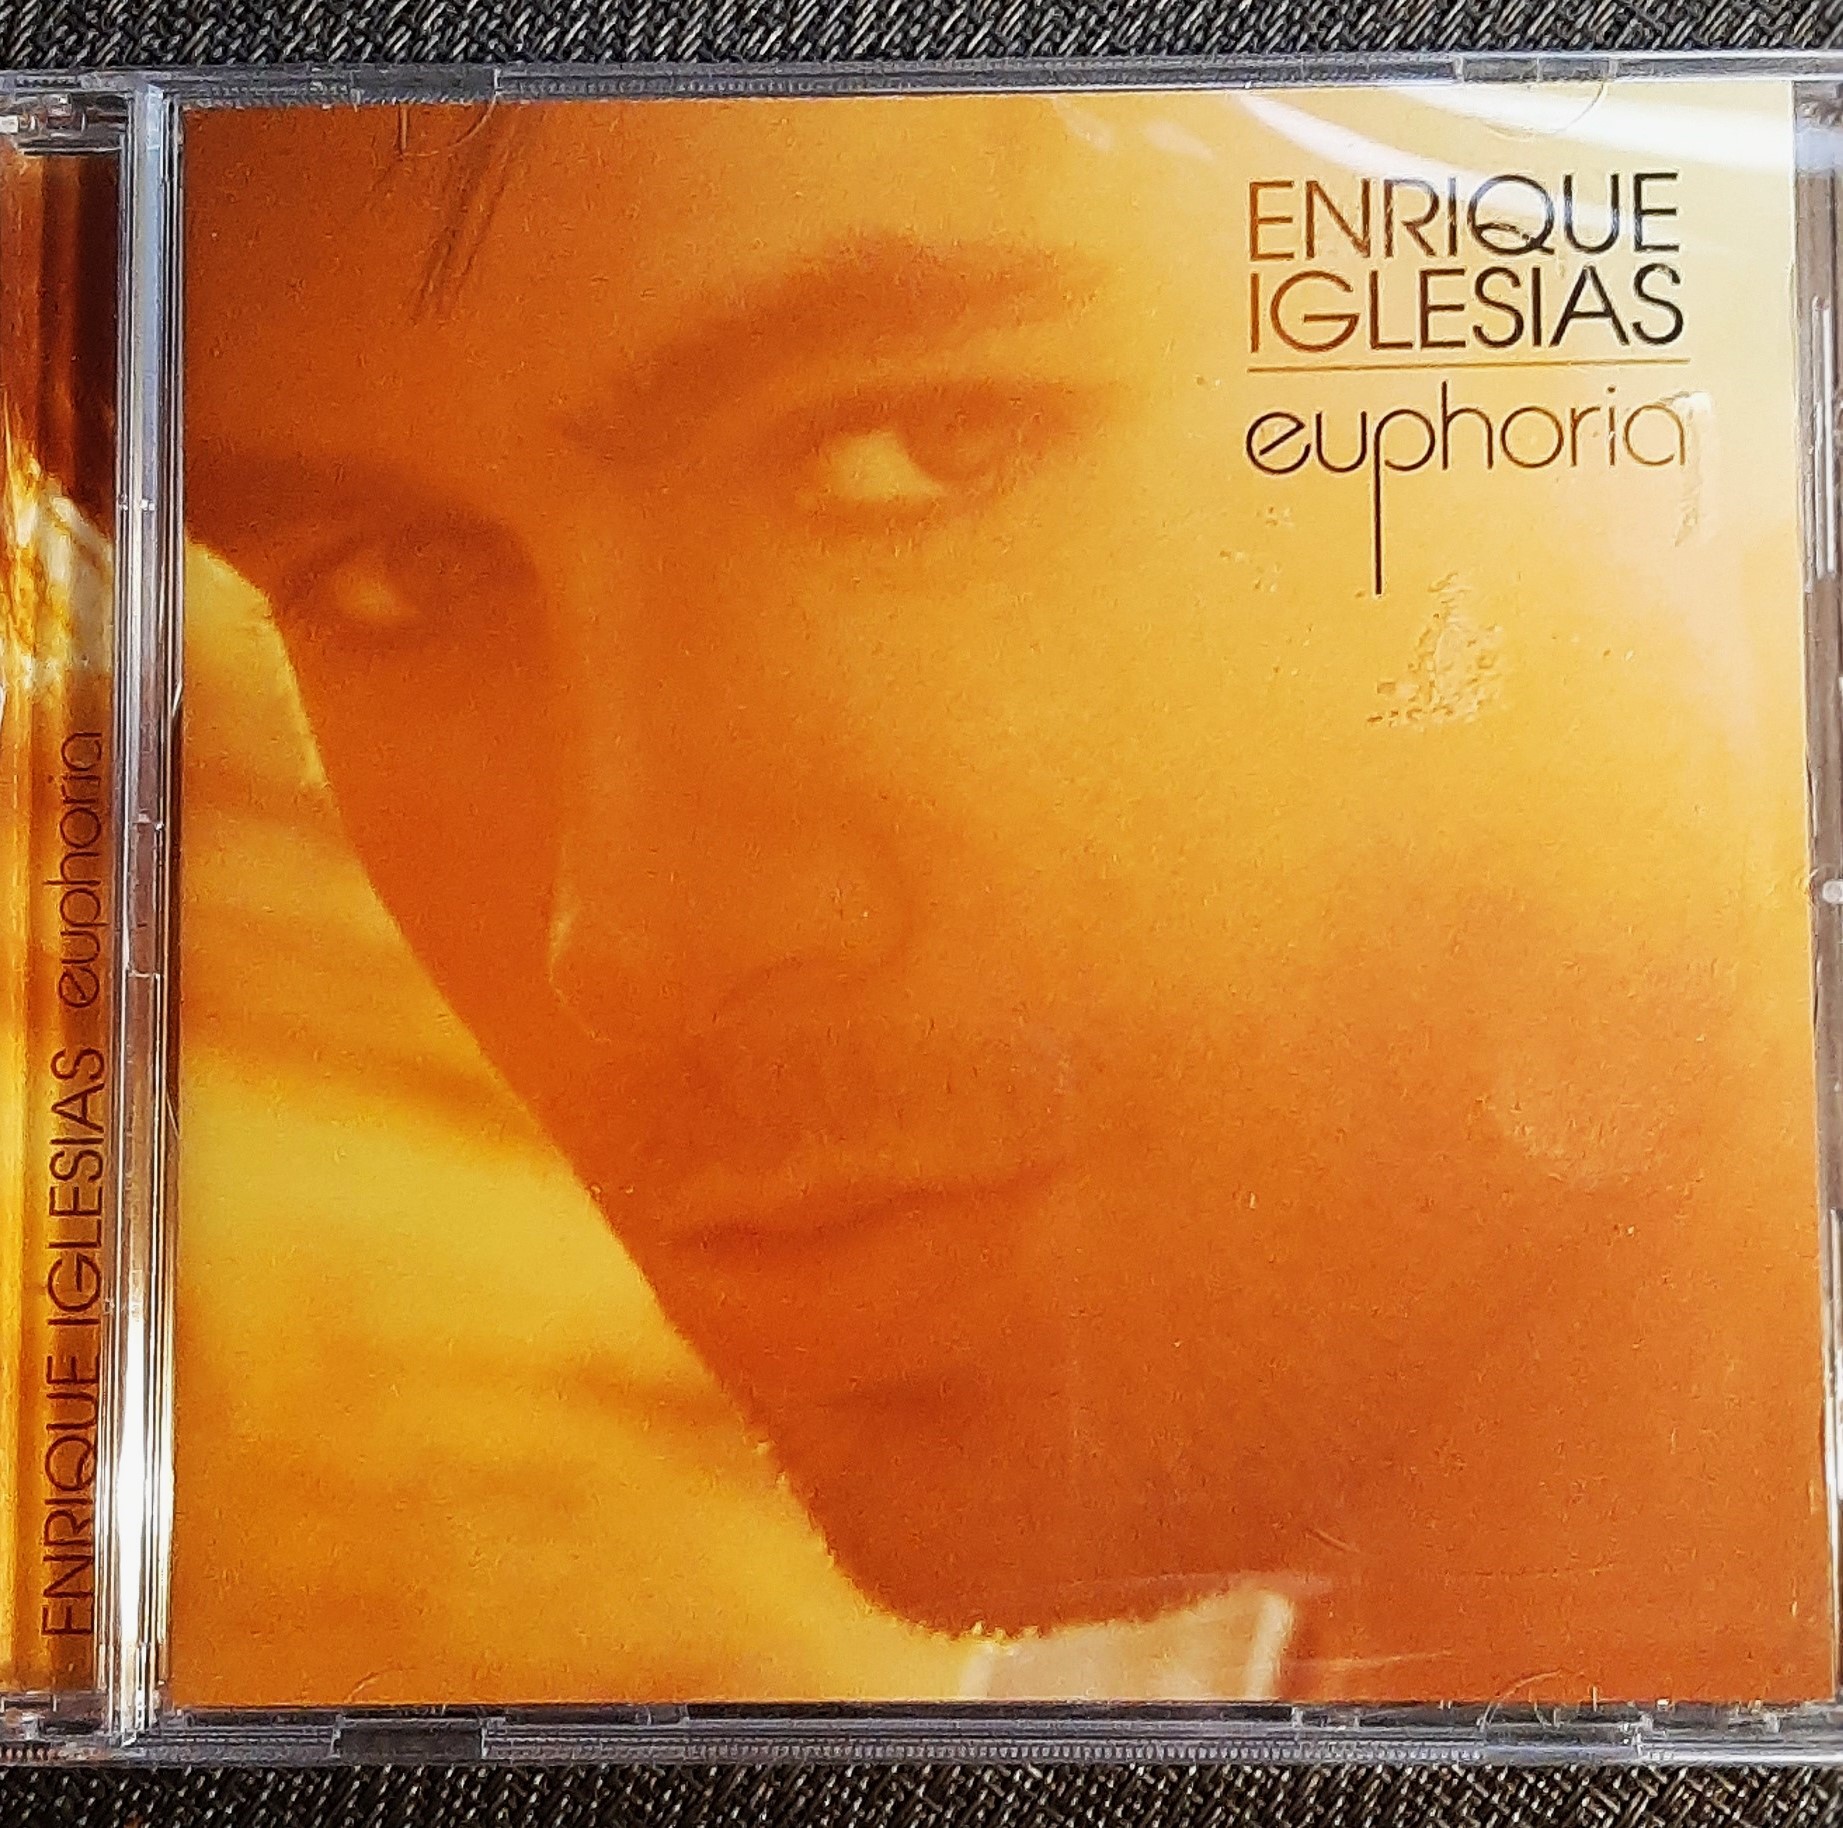 Polecam Wspaniały Album CD- ENRIQE IGLESIAS -Album Euphoria CD